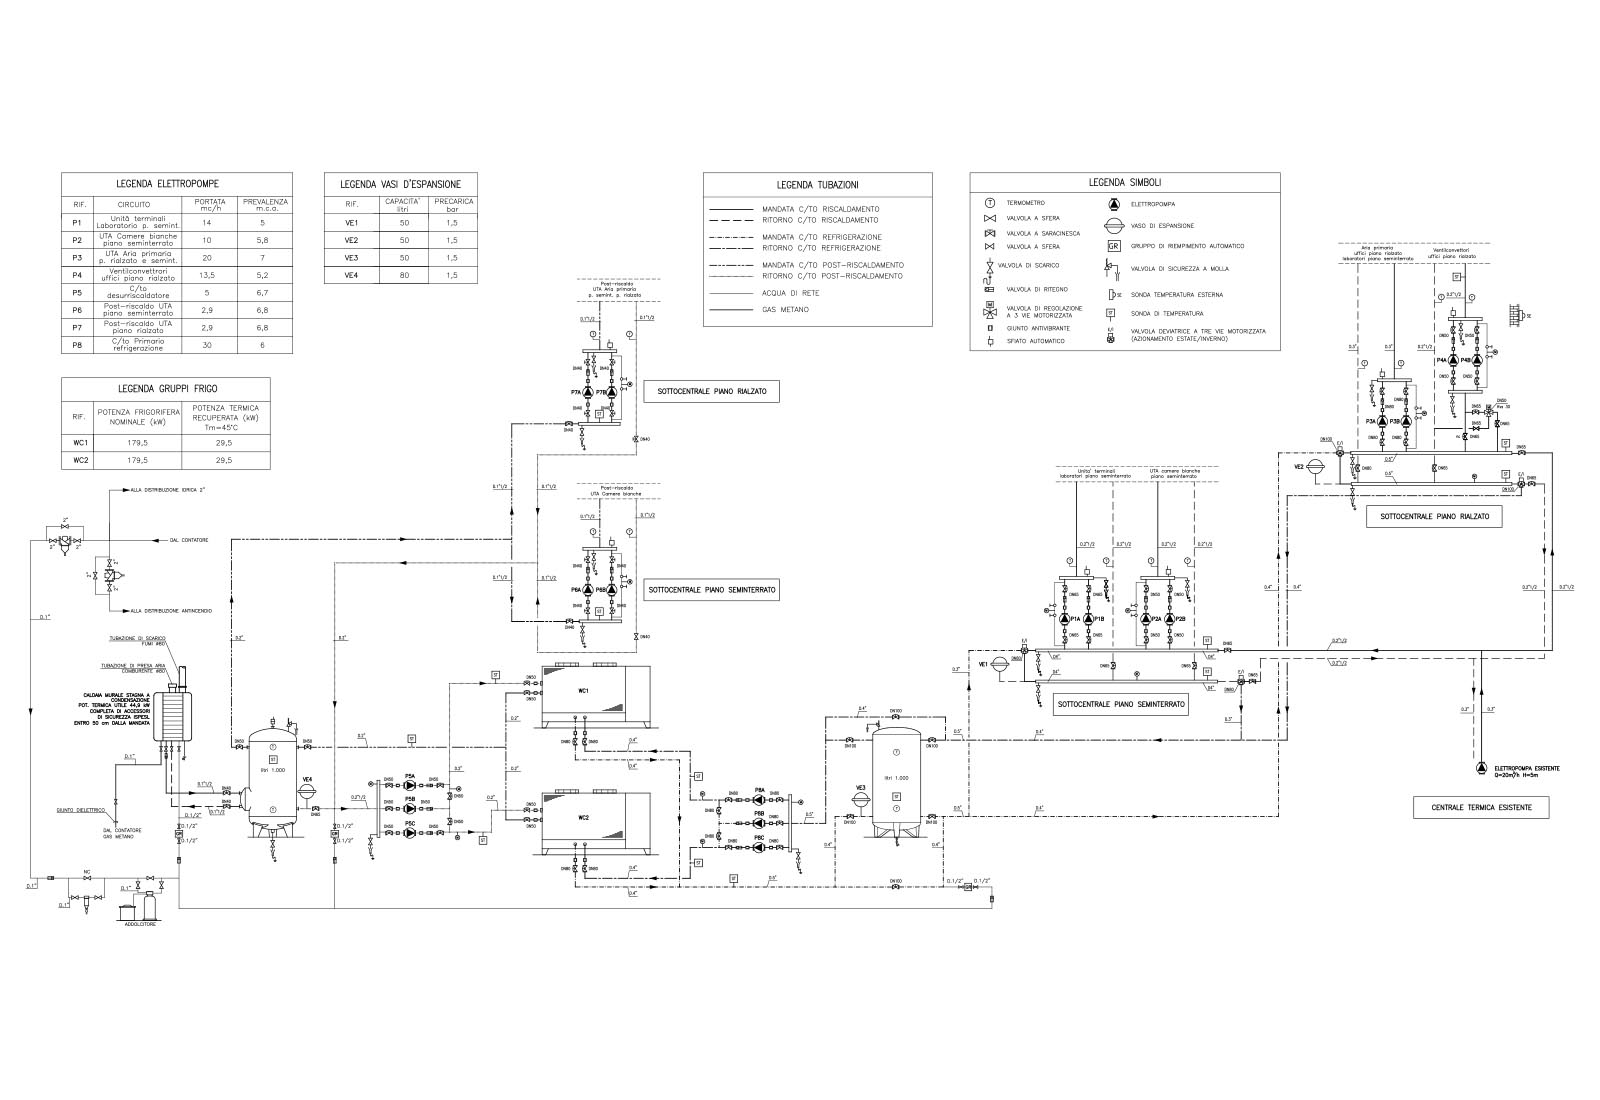 Politecnico Fotonica - Schema funzionale impianti meccanici